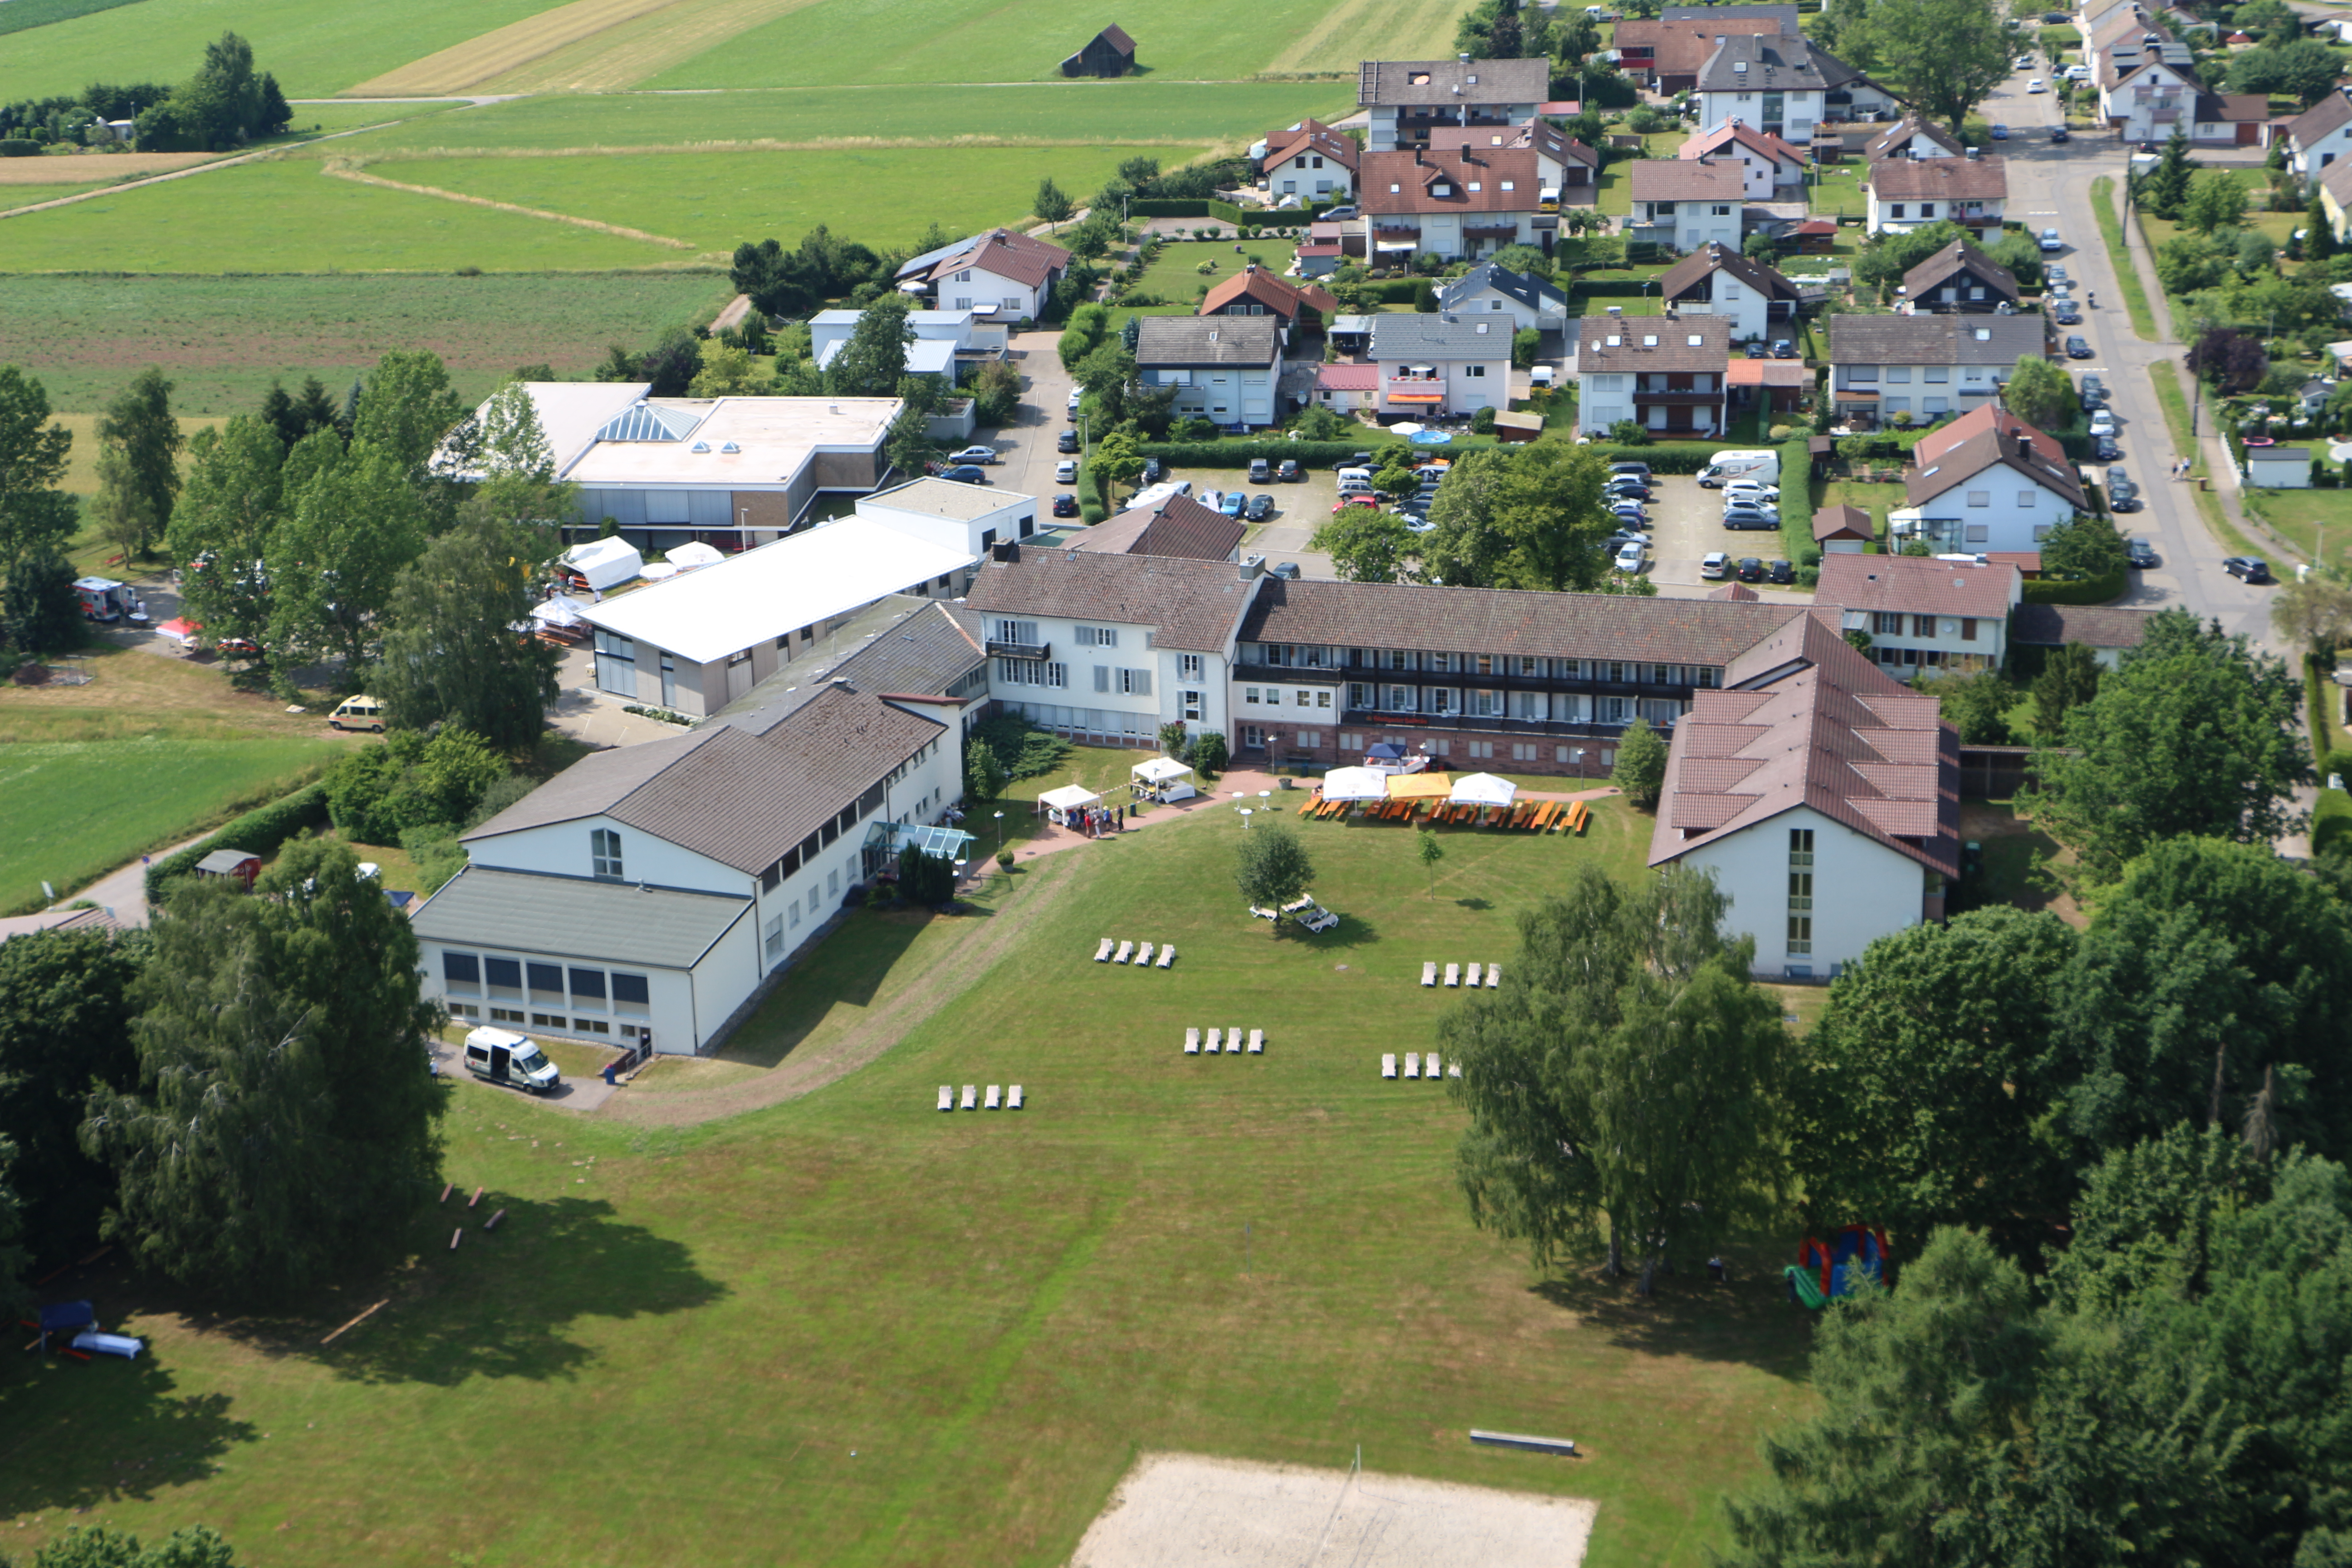  Landessanitätsschule Pfalzgrafenweiler 